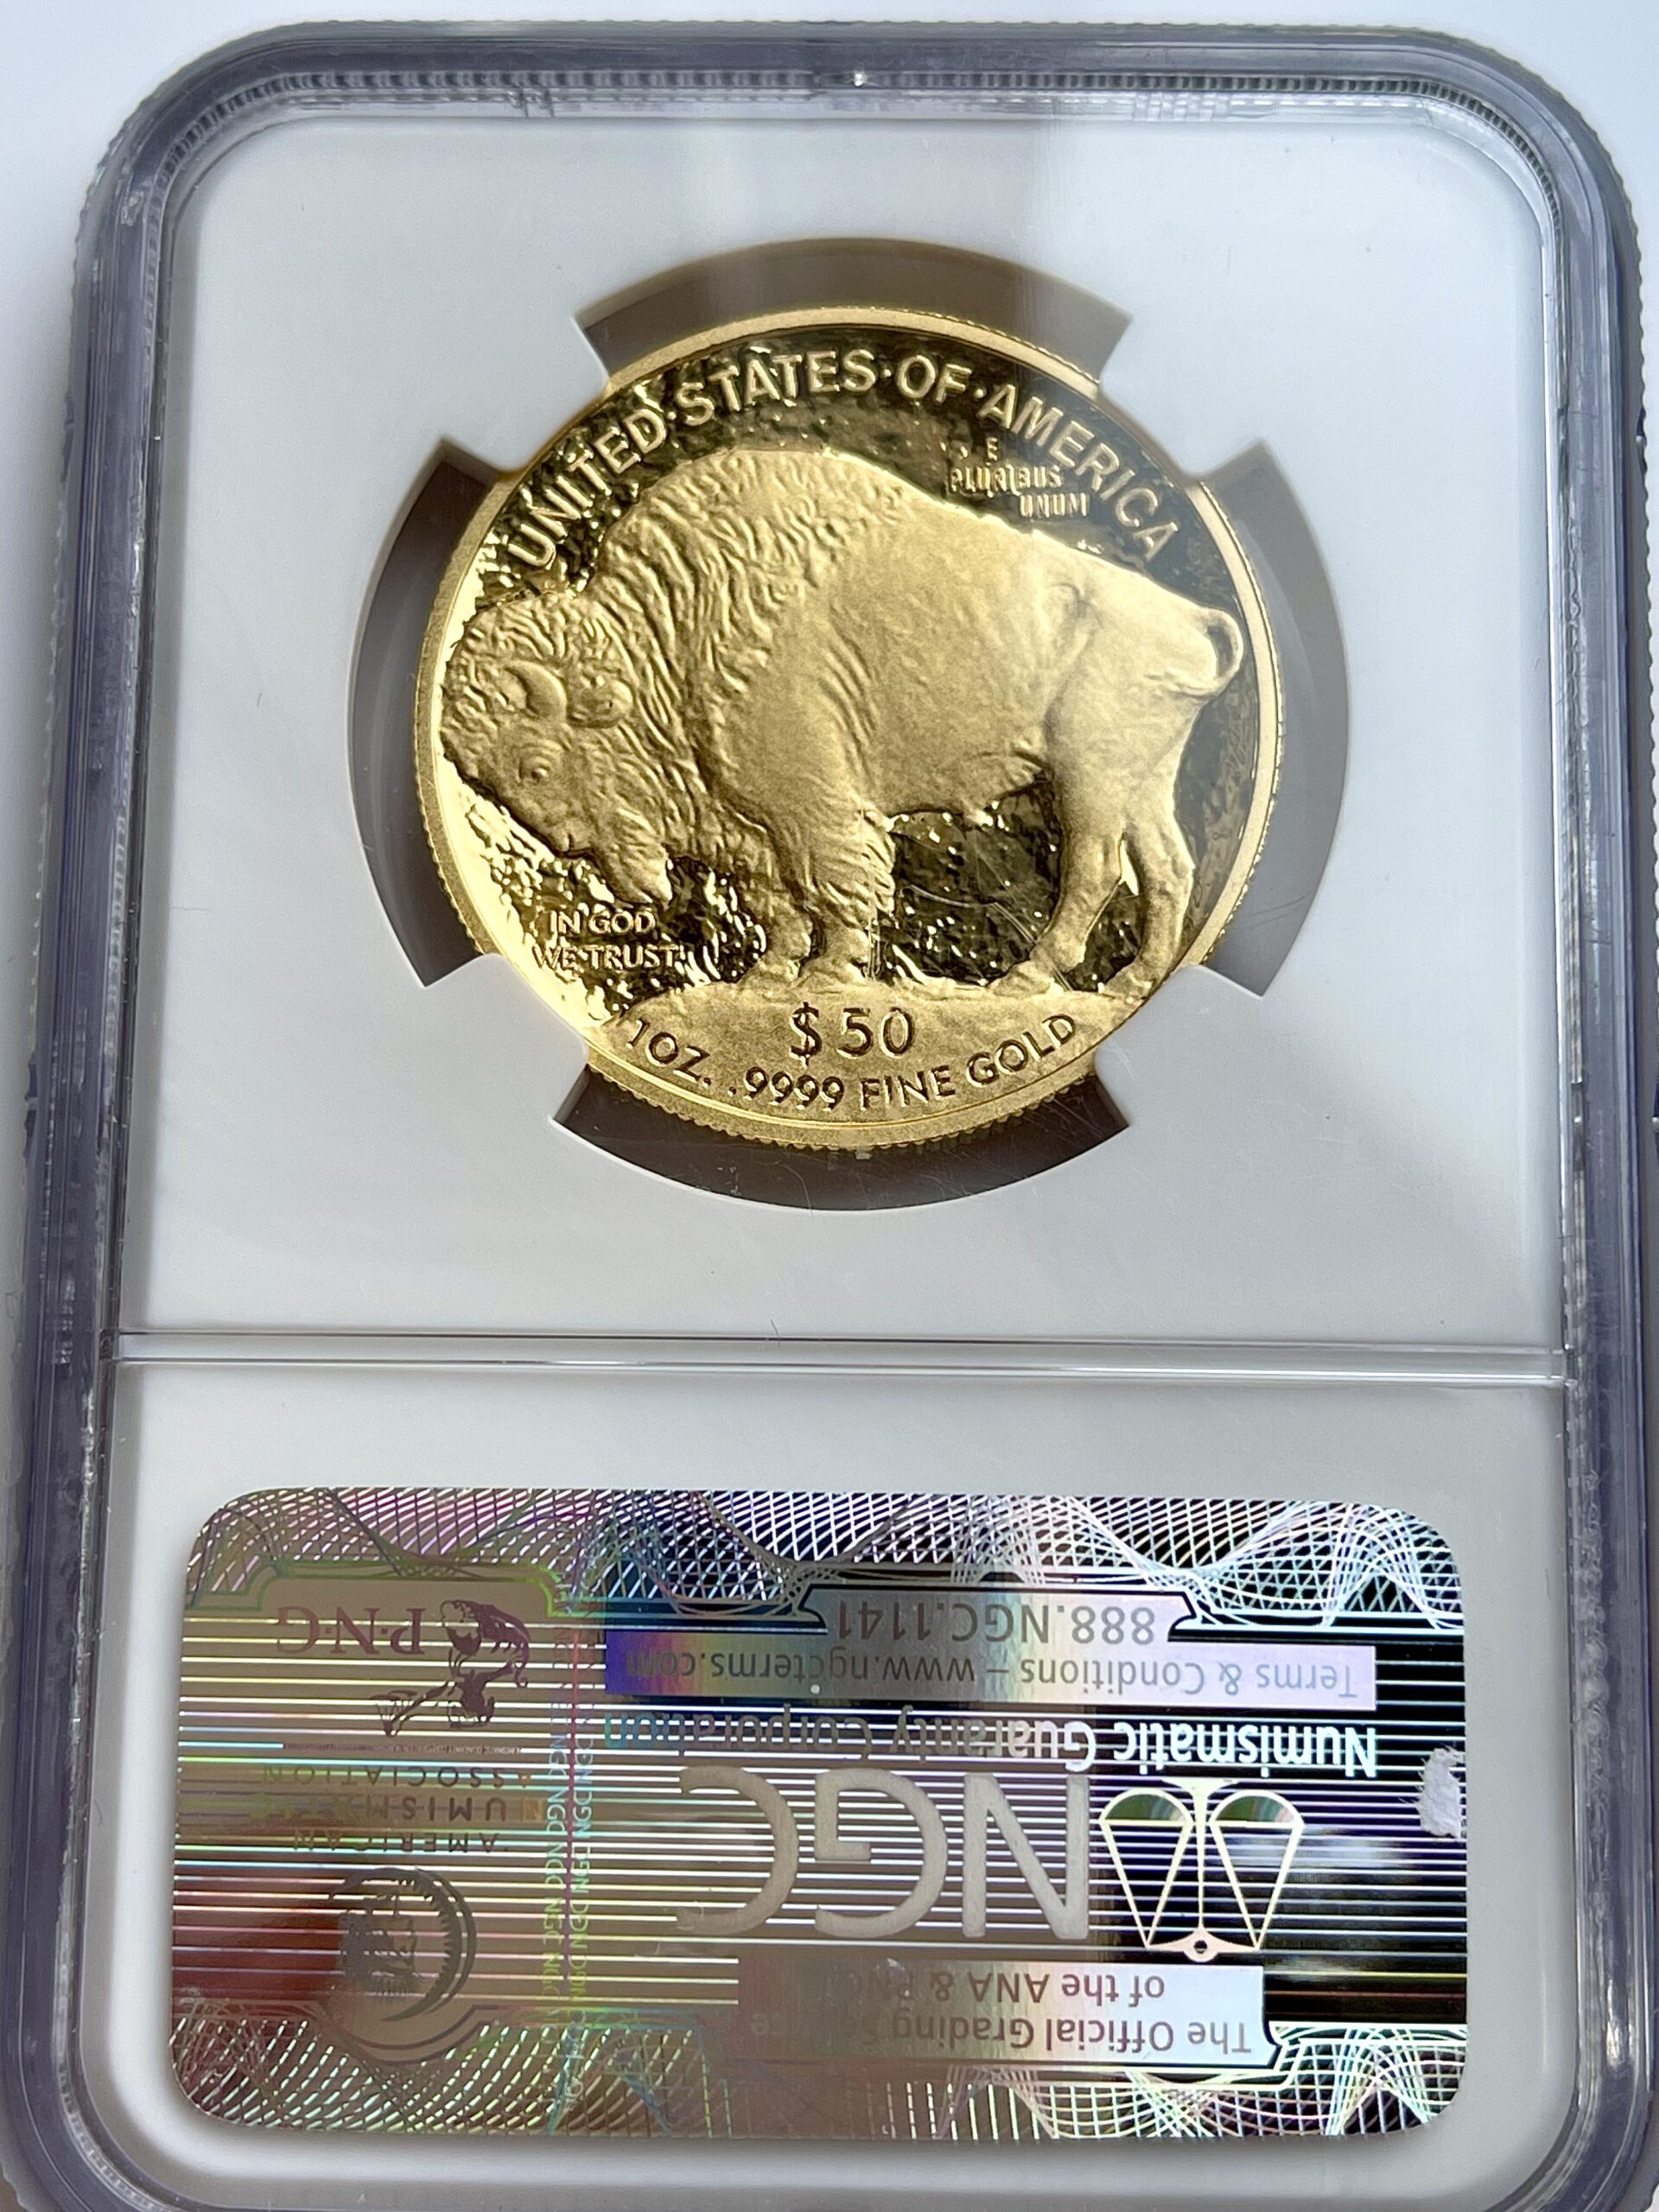 美国美国布法罗2009年精制精制币 NGC PF70 UCAM